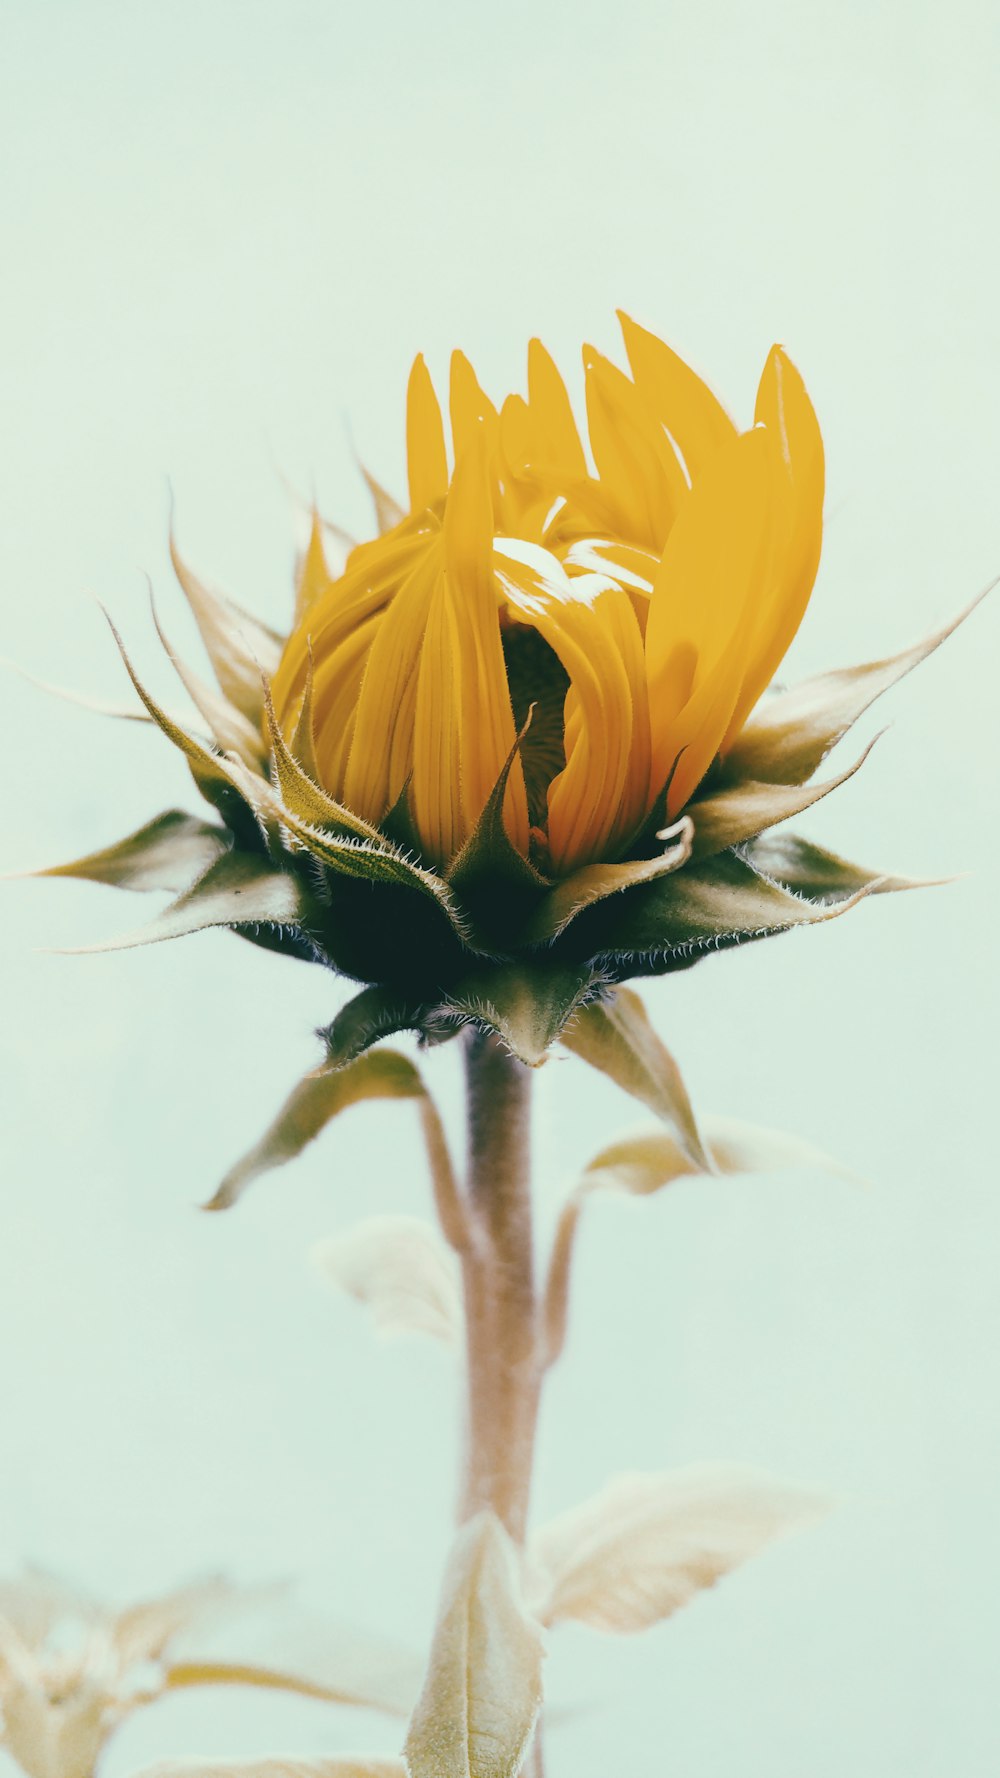 Flachfokusfotografie der gelben Sonnenblume